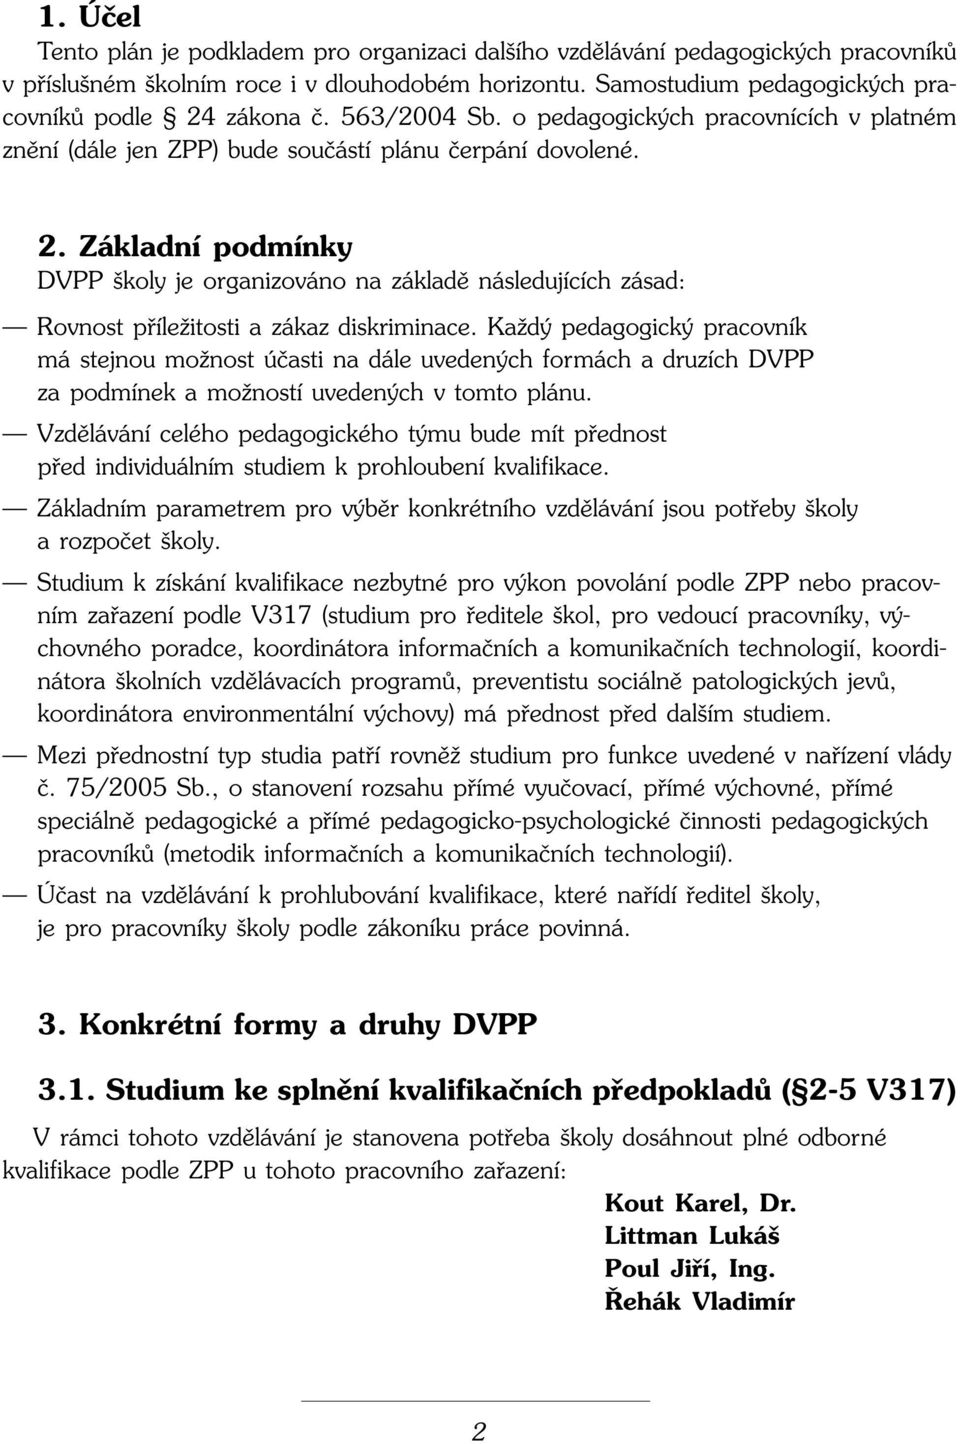 Základní podmínky DVPP koly je organizováno na základû následujících zásad: Rovnost pfiíleïitosti a zákaz diskriminace.